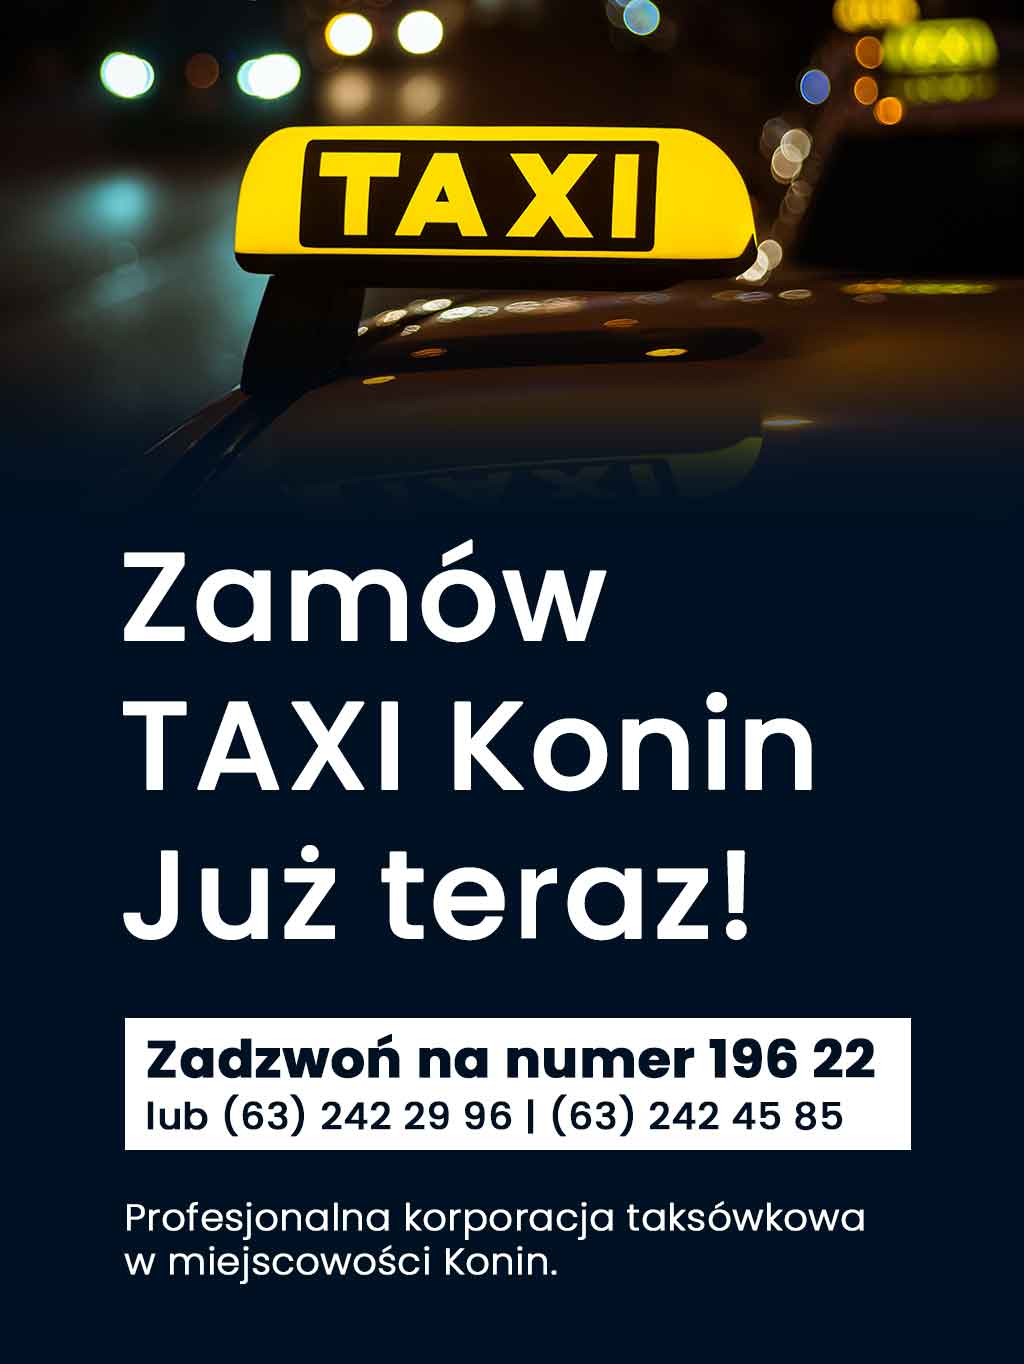 radio taxi konin zamów taksówkę